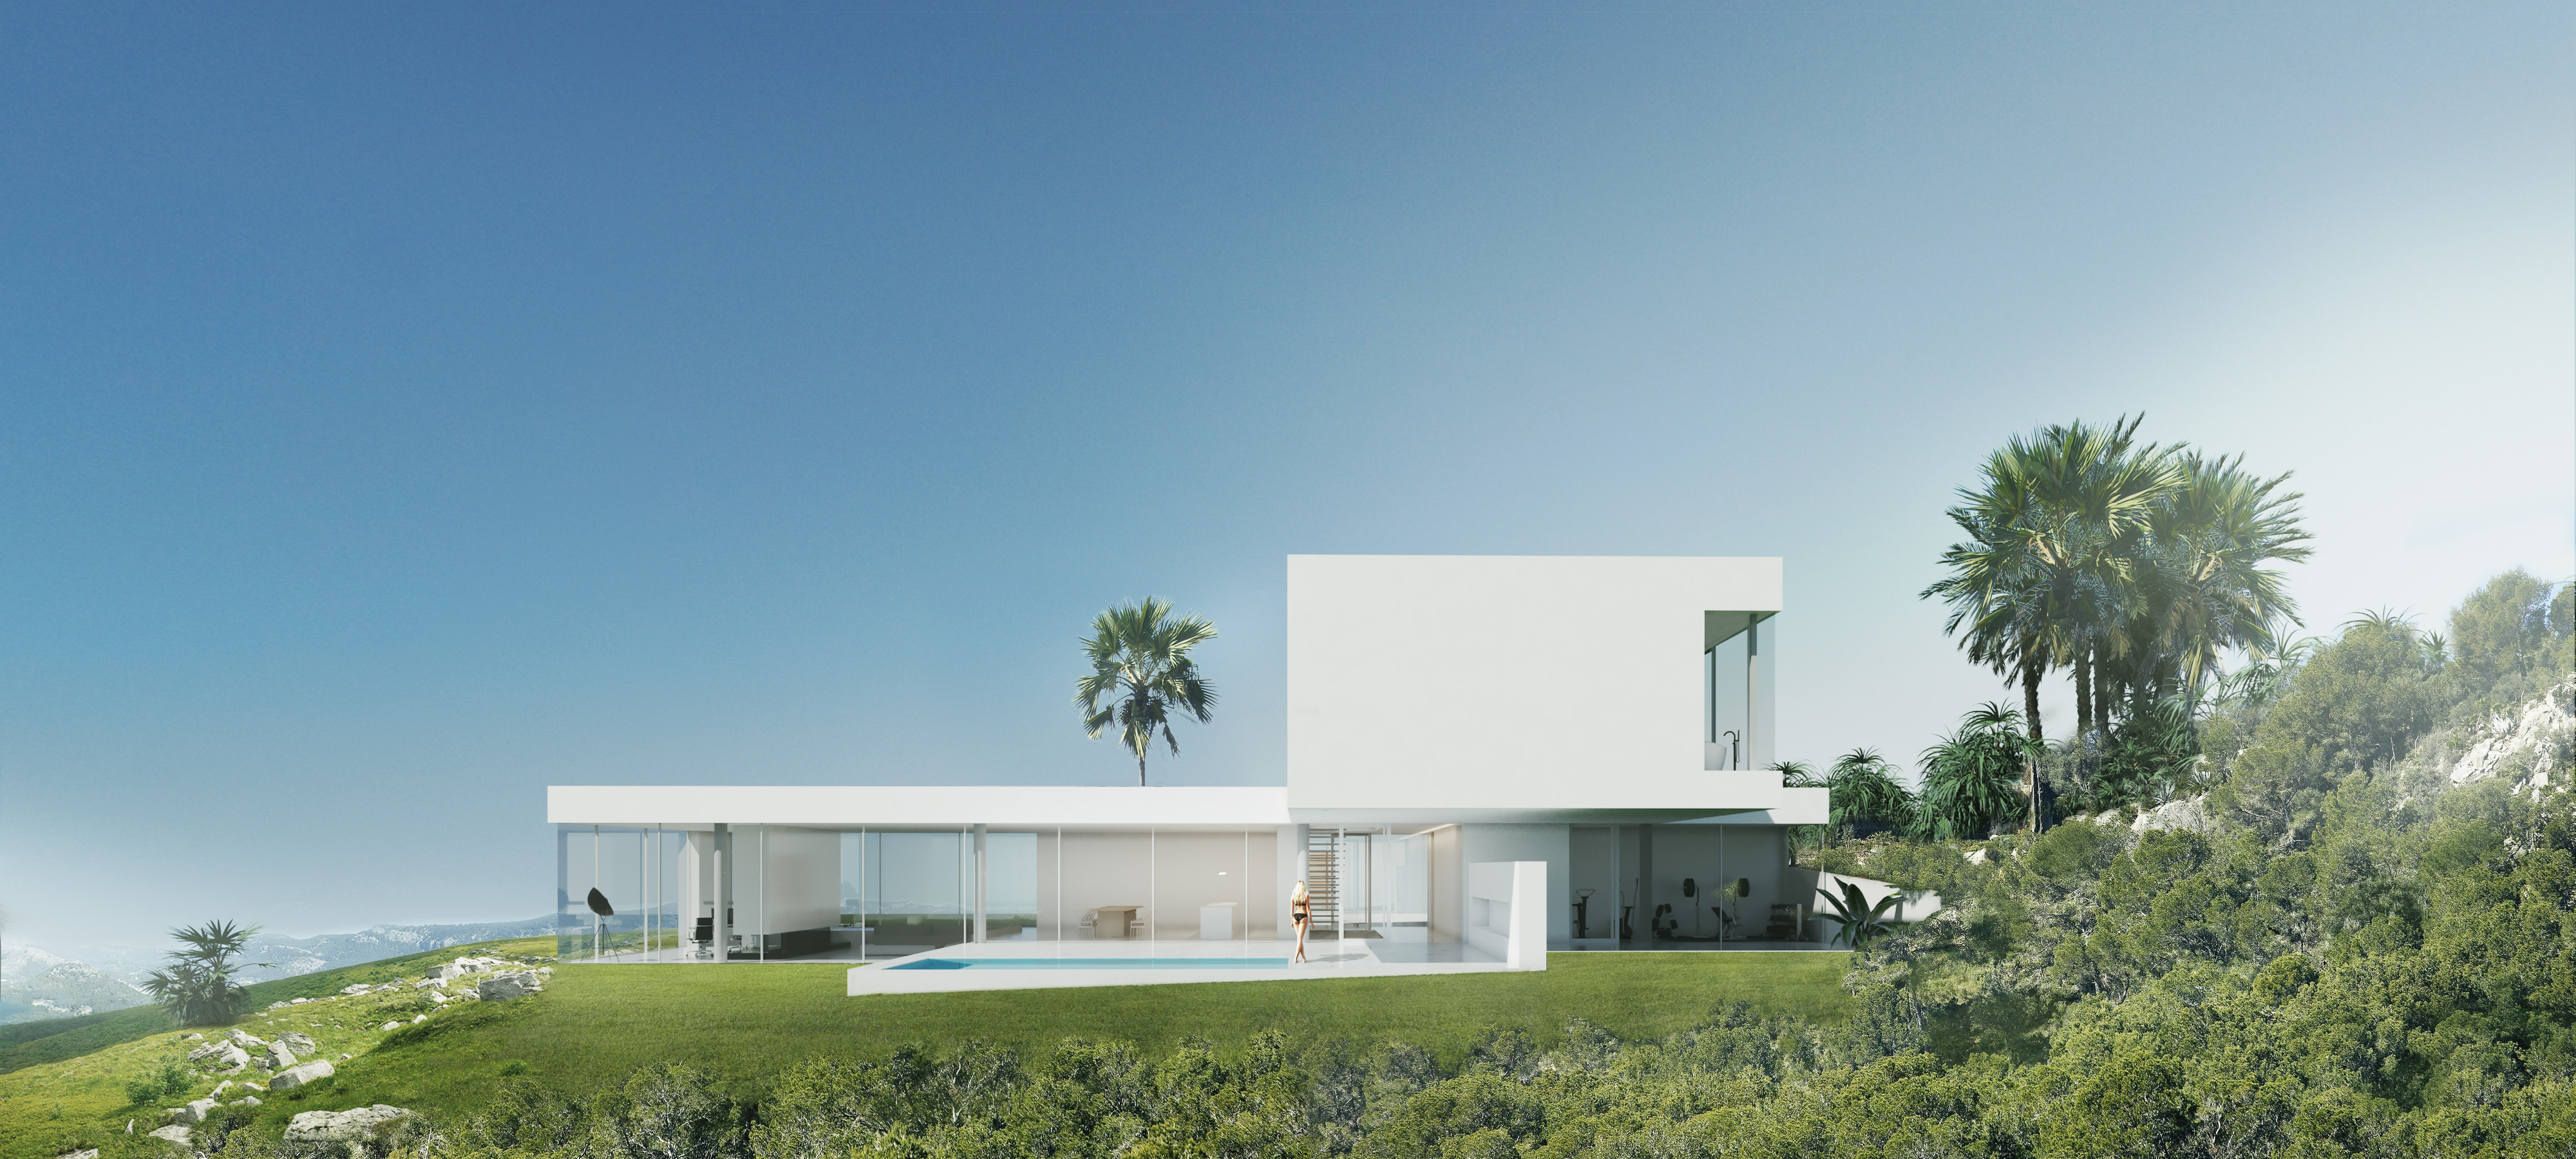 dom jednorodzinny na Majorce 400m2 minimalizm